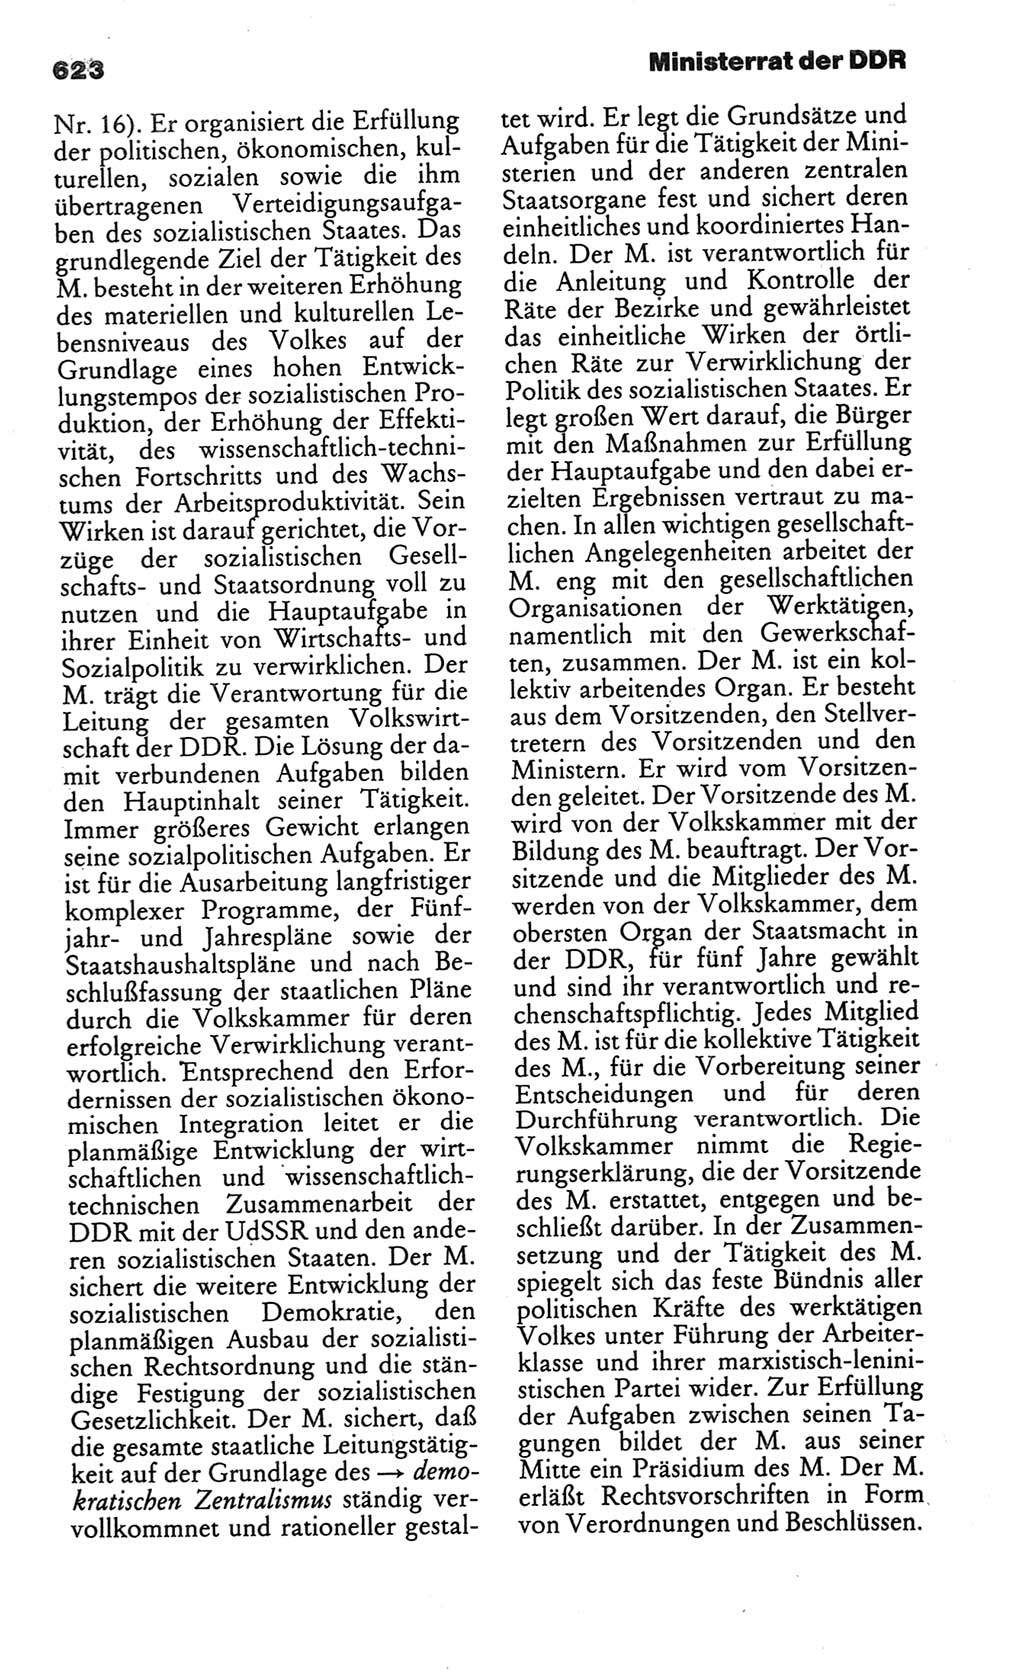 Kleines politisches Wörterbuch [Deutsche Demokratische Republik (DDR)] 1986, Seite 623 (Kl. pol. Wb. DDR 1986, S. 623)